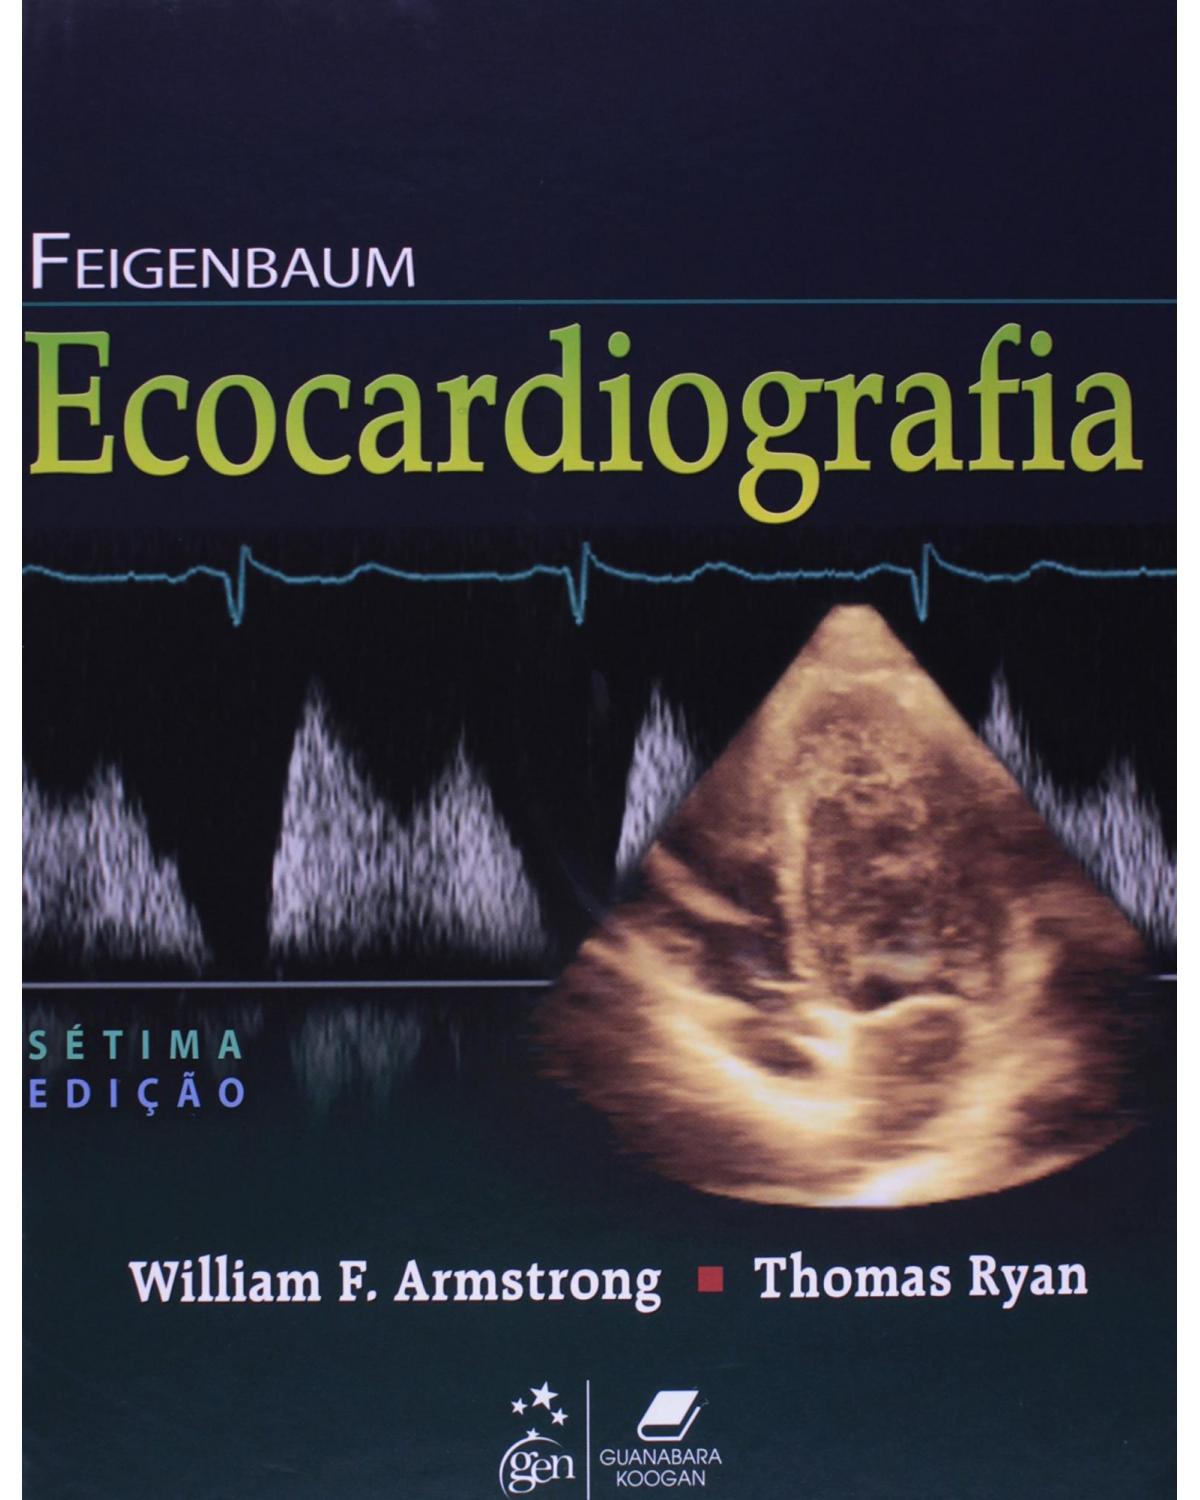 Feigenbaum - Ecocardiografia - 7ª Edição | 2012